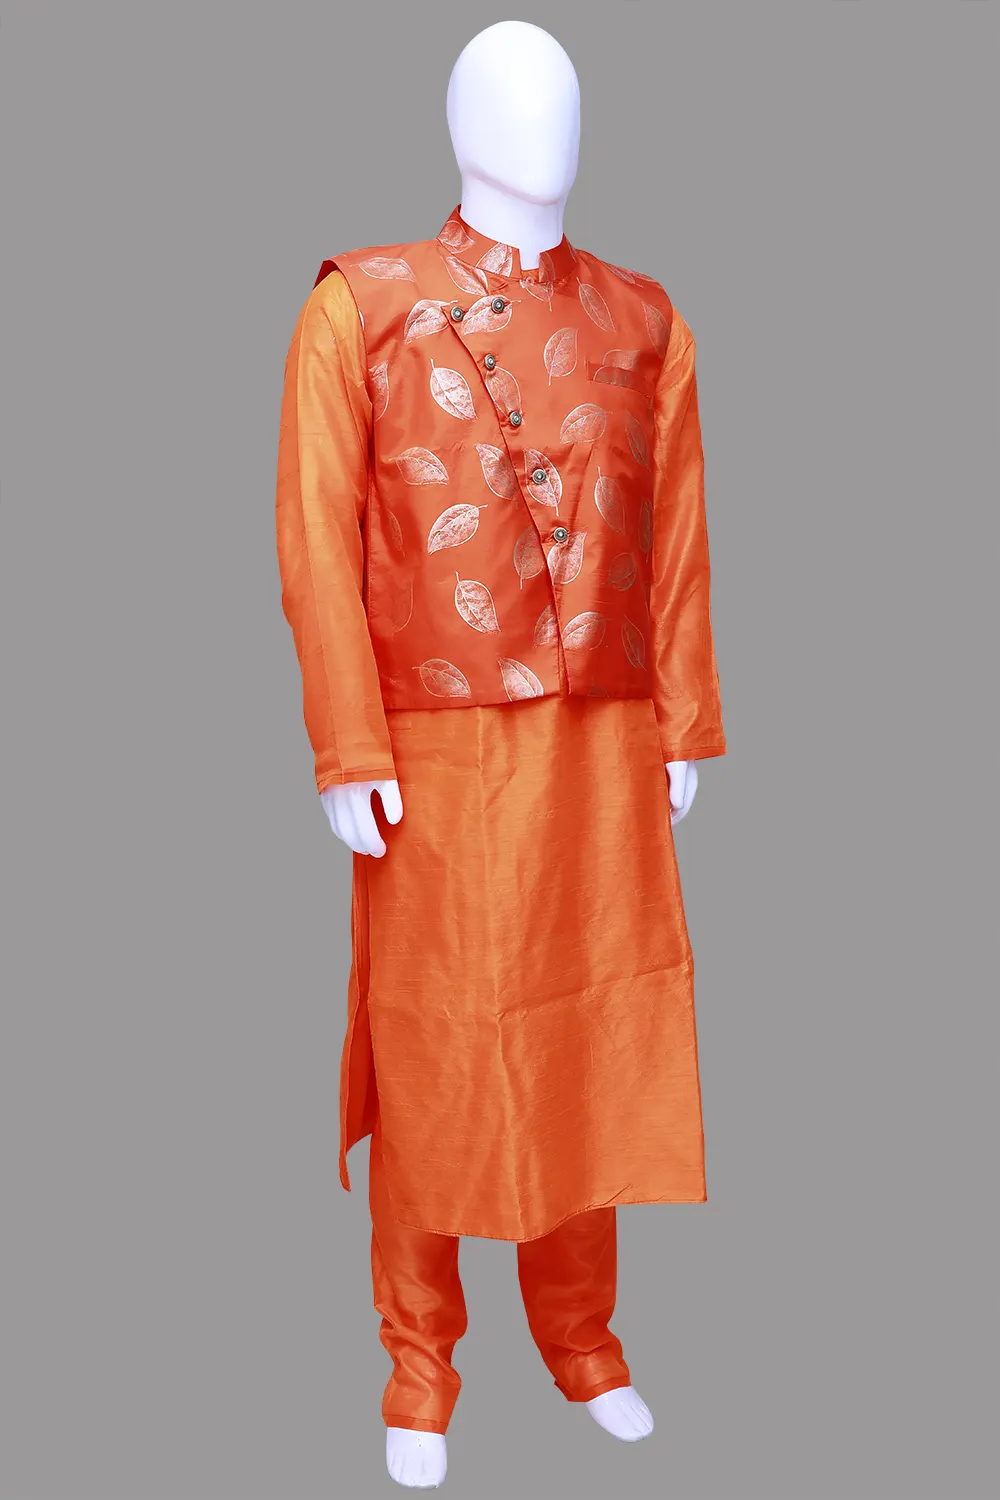 Printed Orange Men's Ethnic Sherwani Set | Orange Sherwani